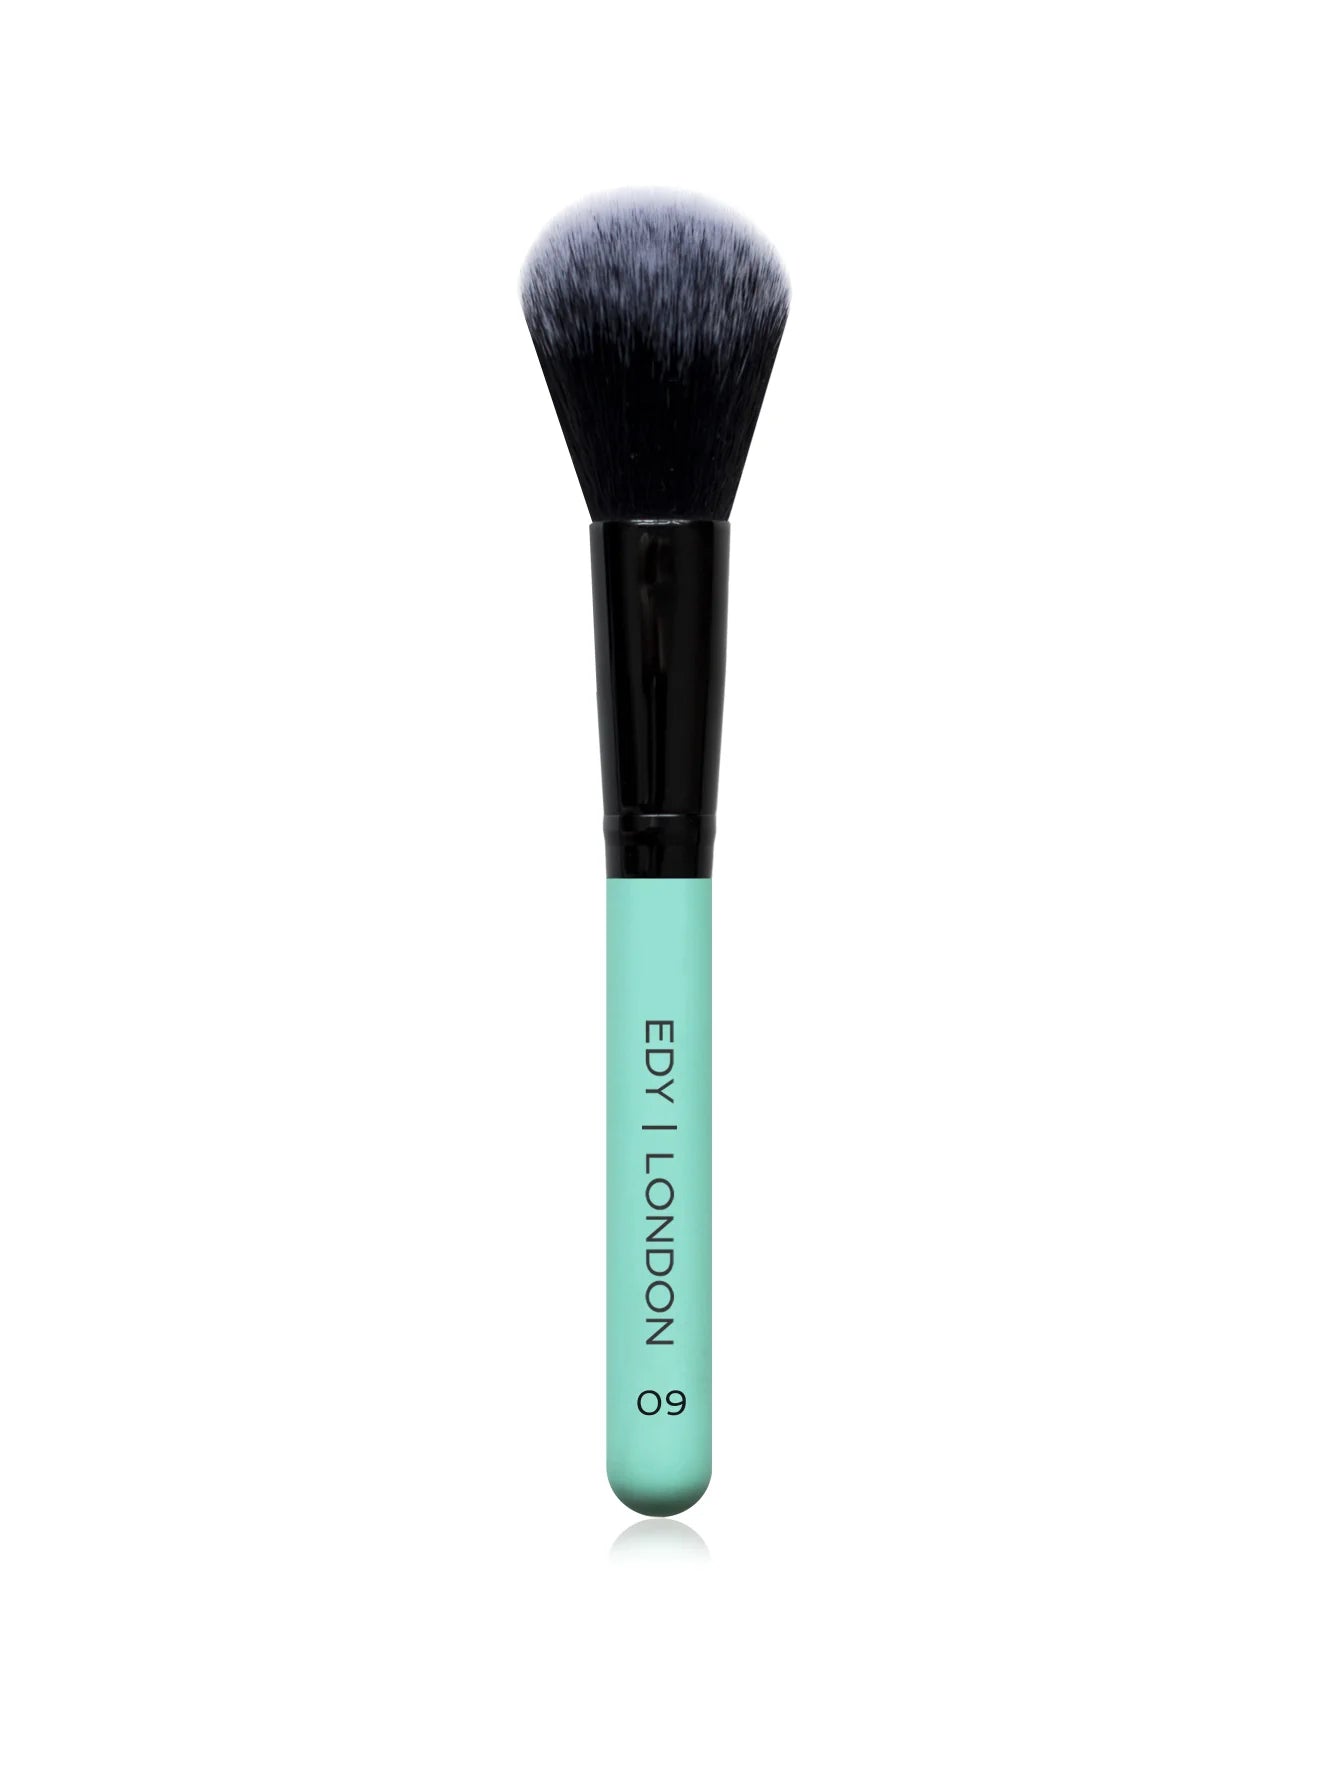 Small Domed Blush Brush 09 Make-up Brush EDY LONDON Turquoise   [variant_option4] EDY LONDON PRODUCTS UK shop.edy.london